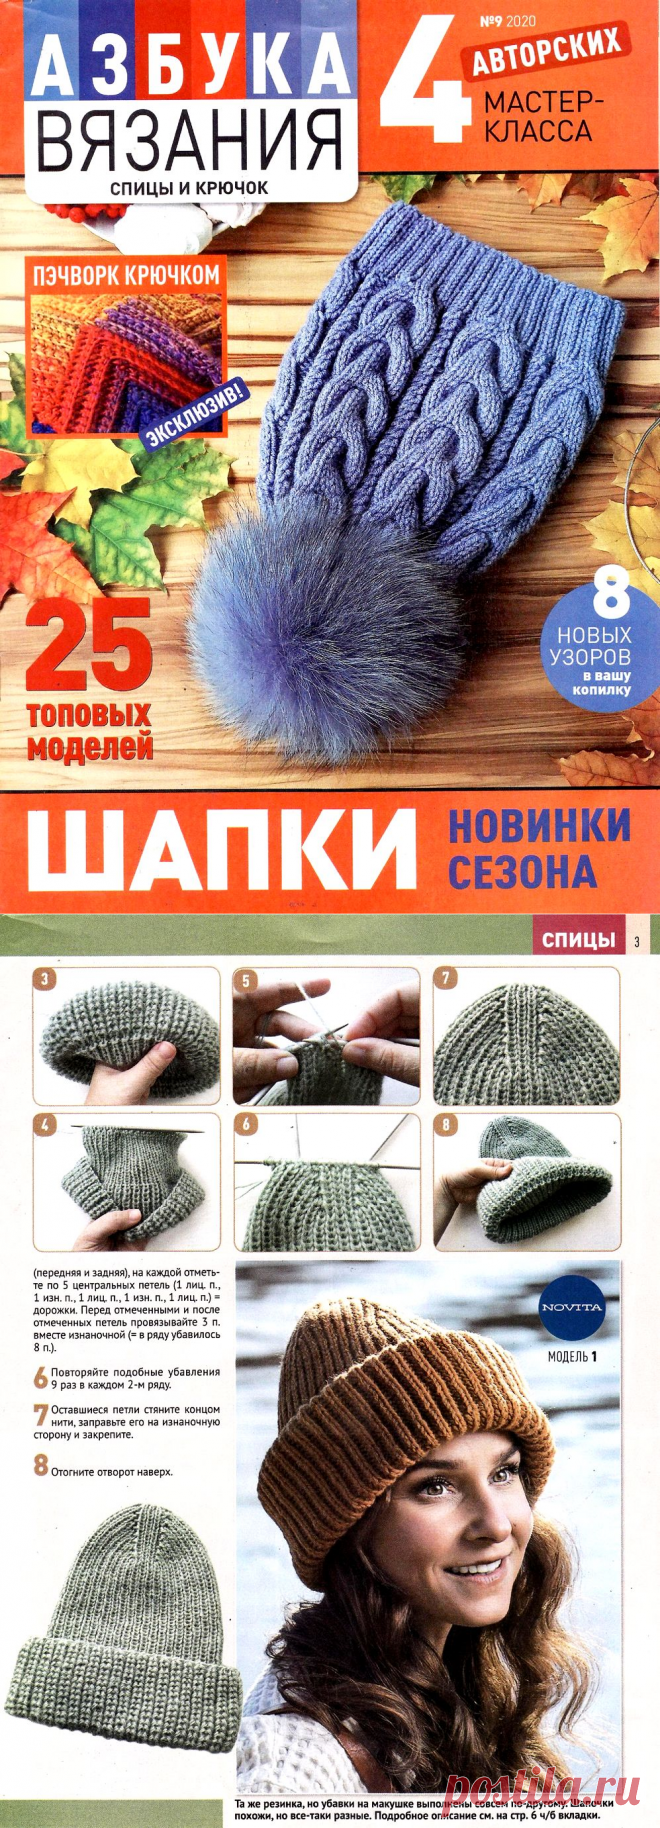 Журнал «Азбука вязания» №9 2020. Модные шапки 2020-2021 — HandMade